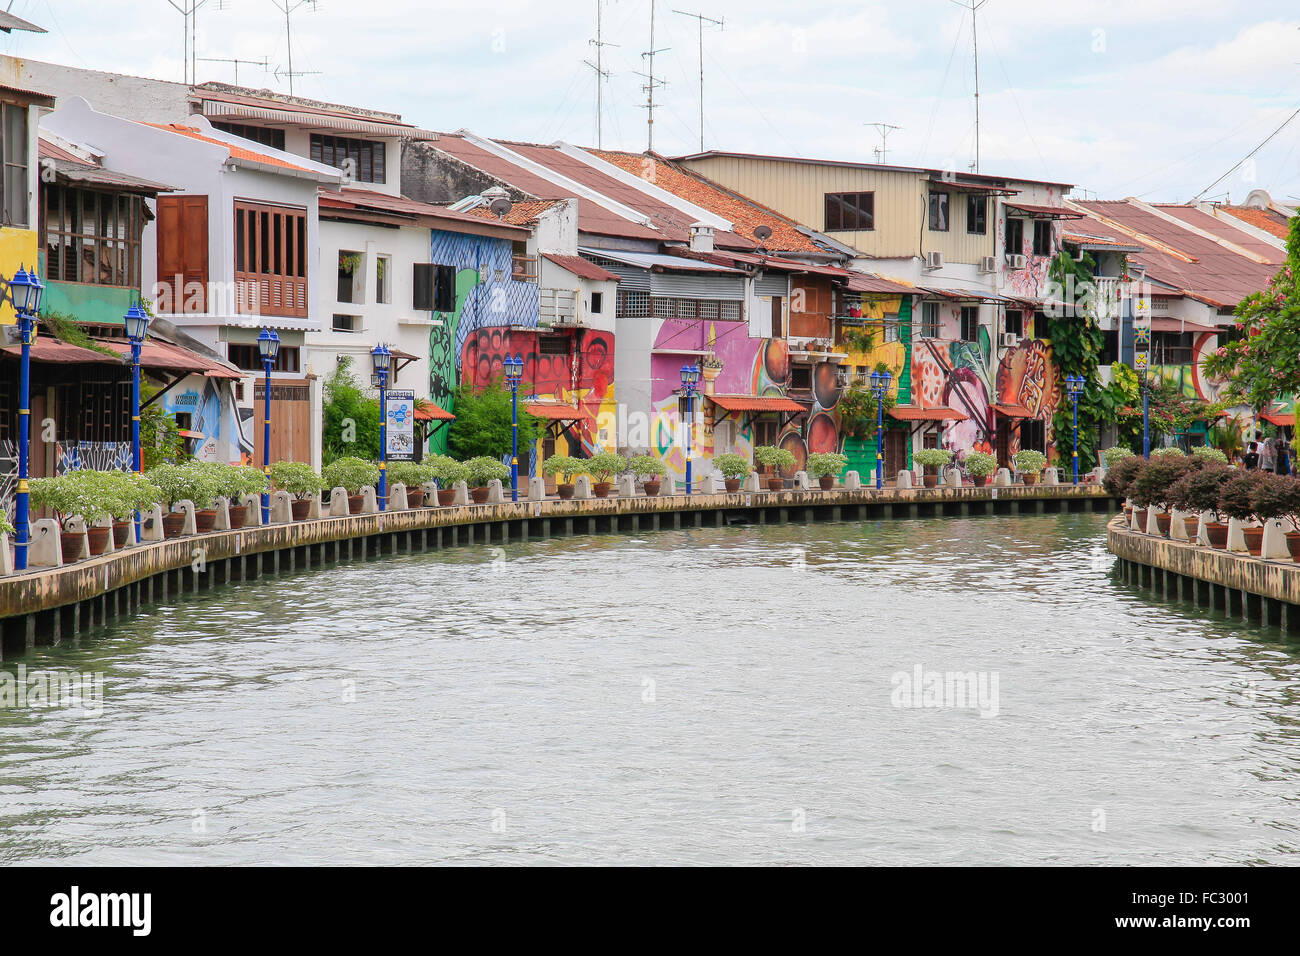 L'art de rue le long de la rivière Malacca, Malacca, Malaisie. Banque D'Images